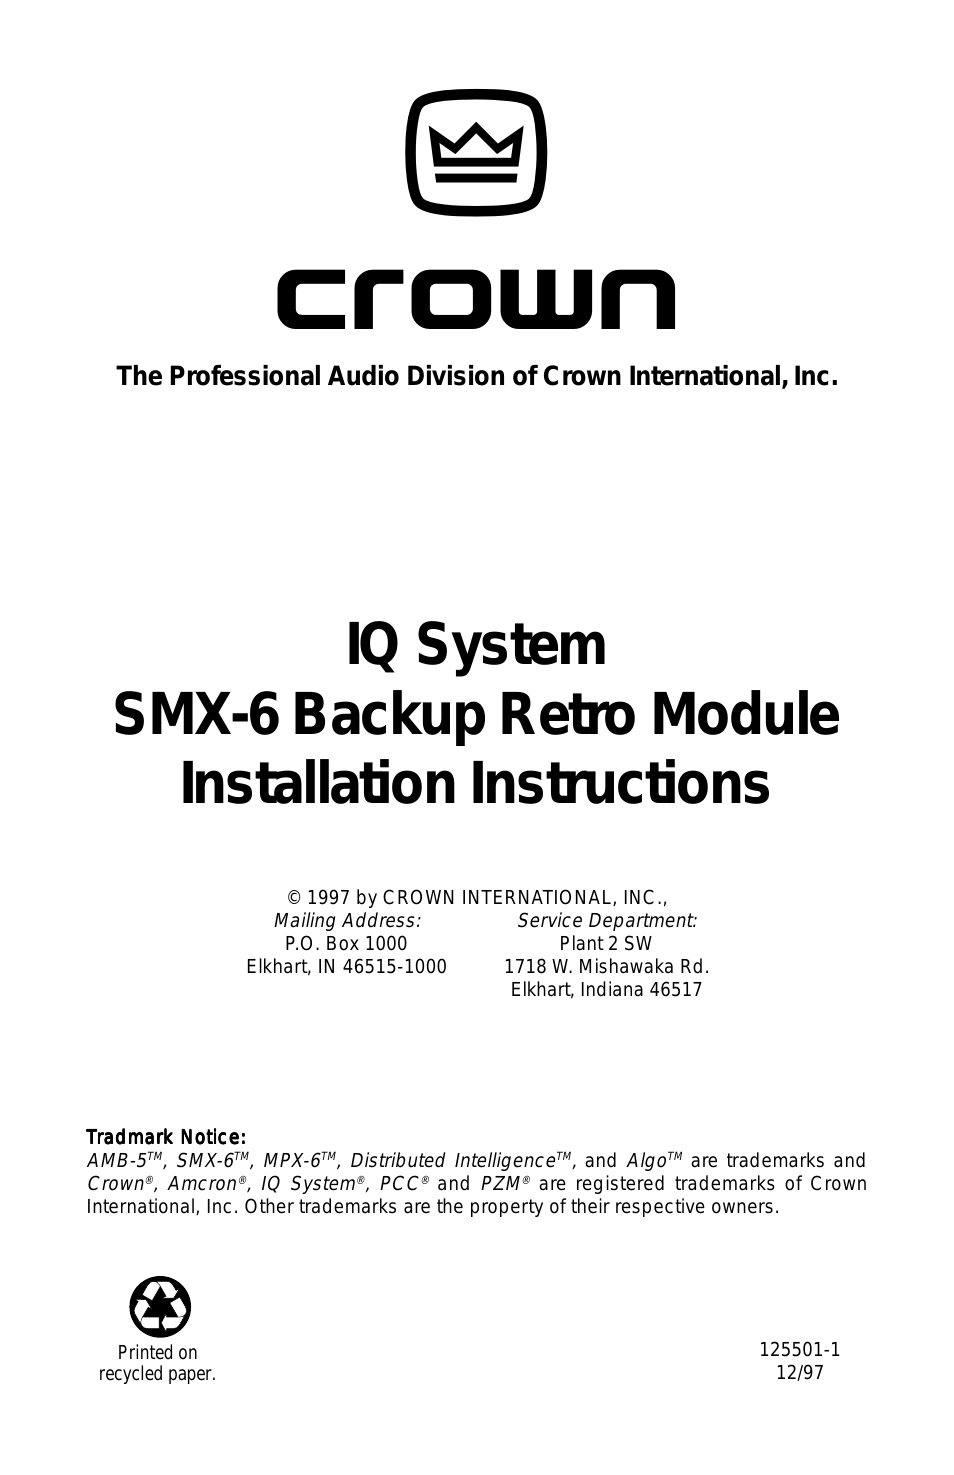 SMX-6 Backup Retro Module